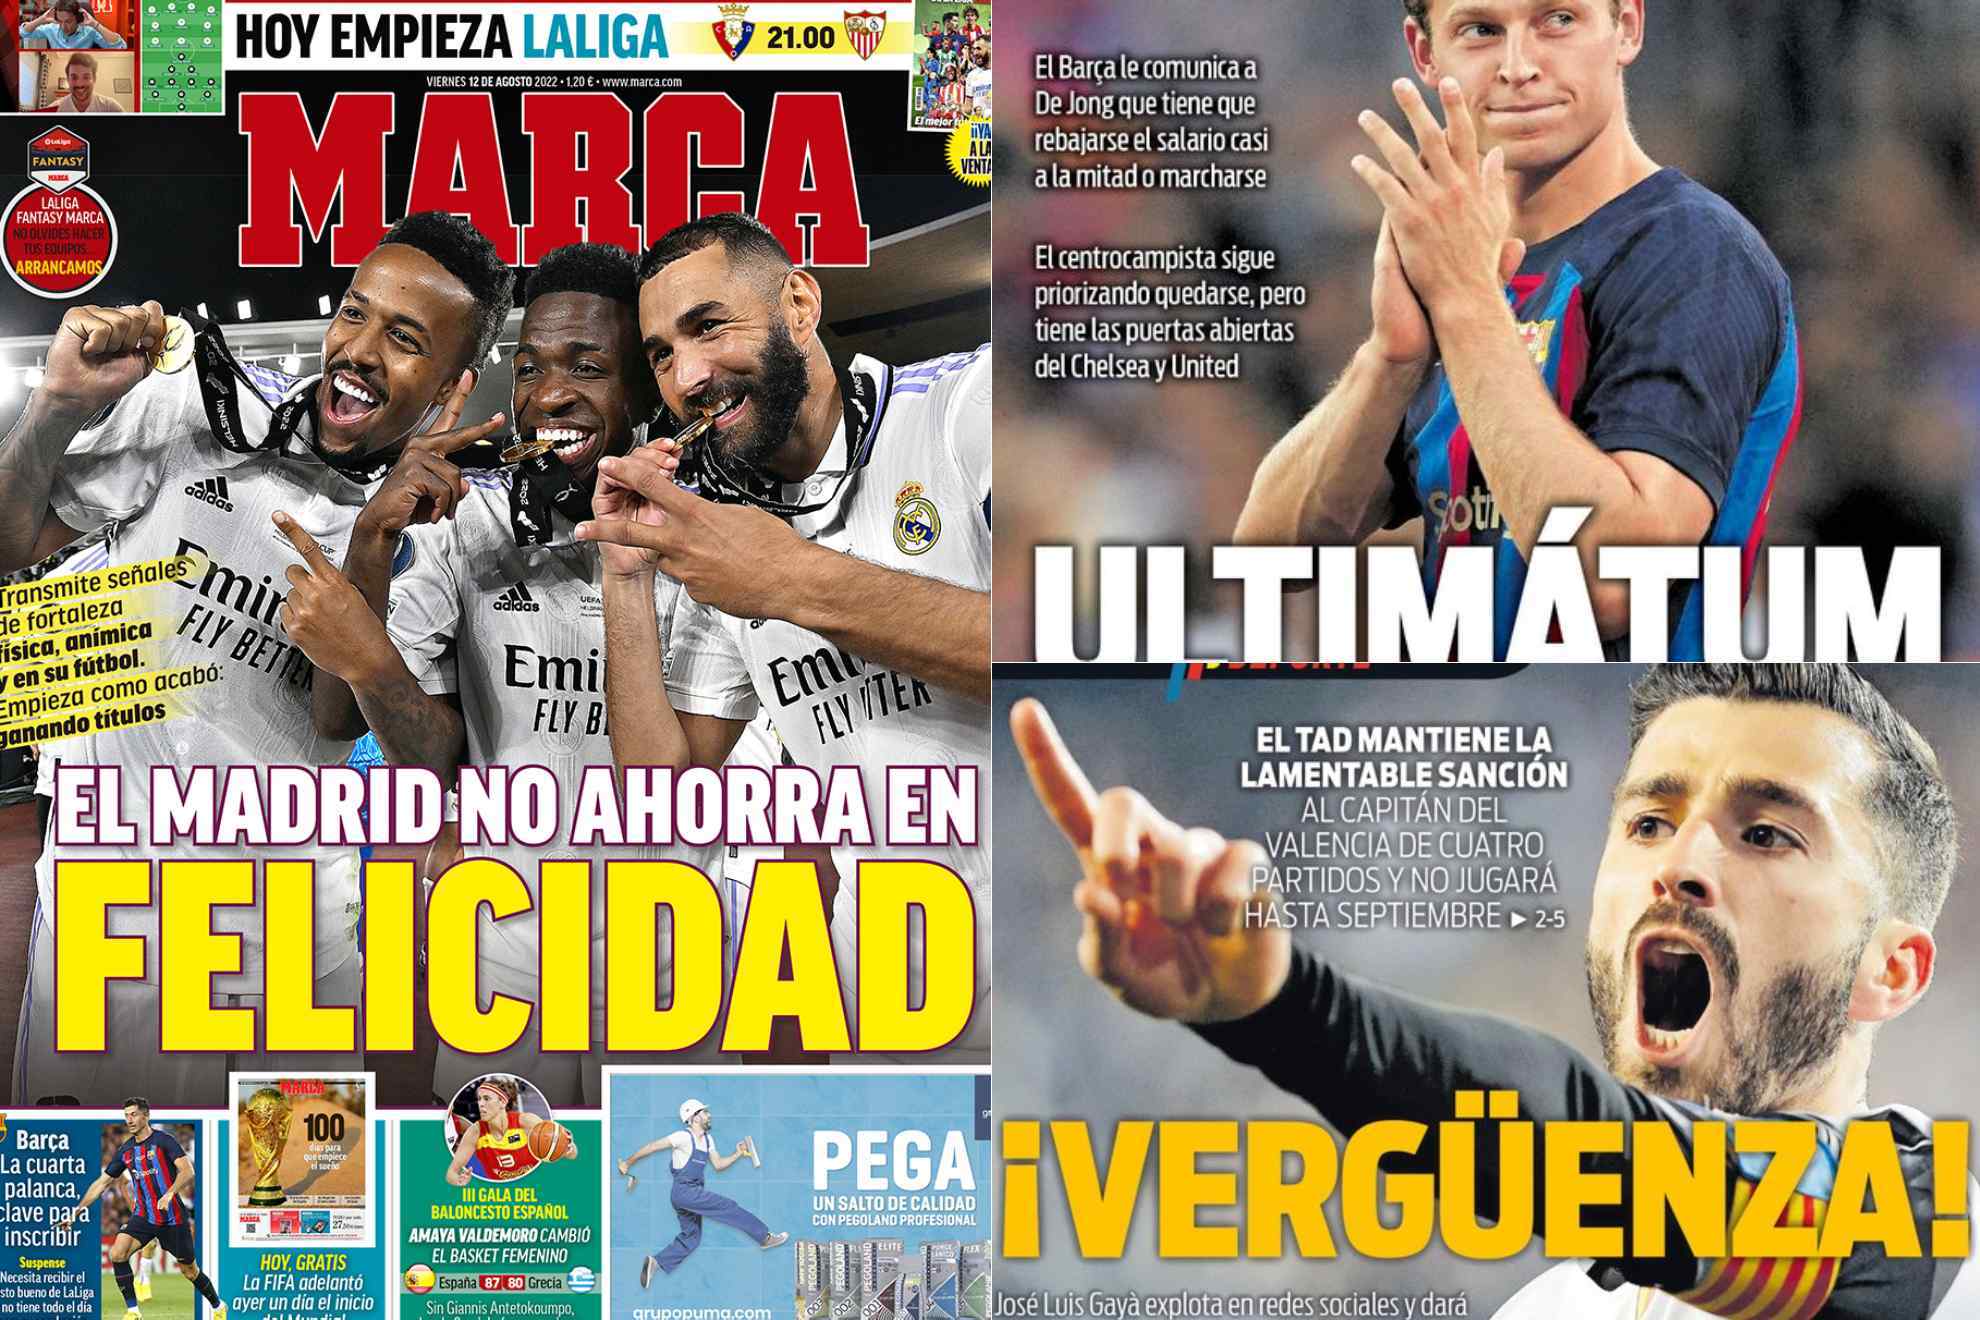 Las portadas: El Madrid no ahorra en felicidad, en Valencia hablan de vergüenza...